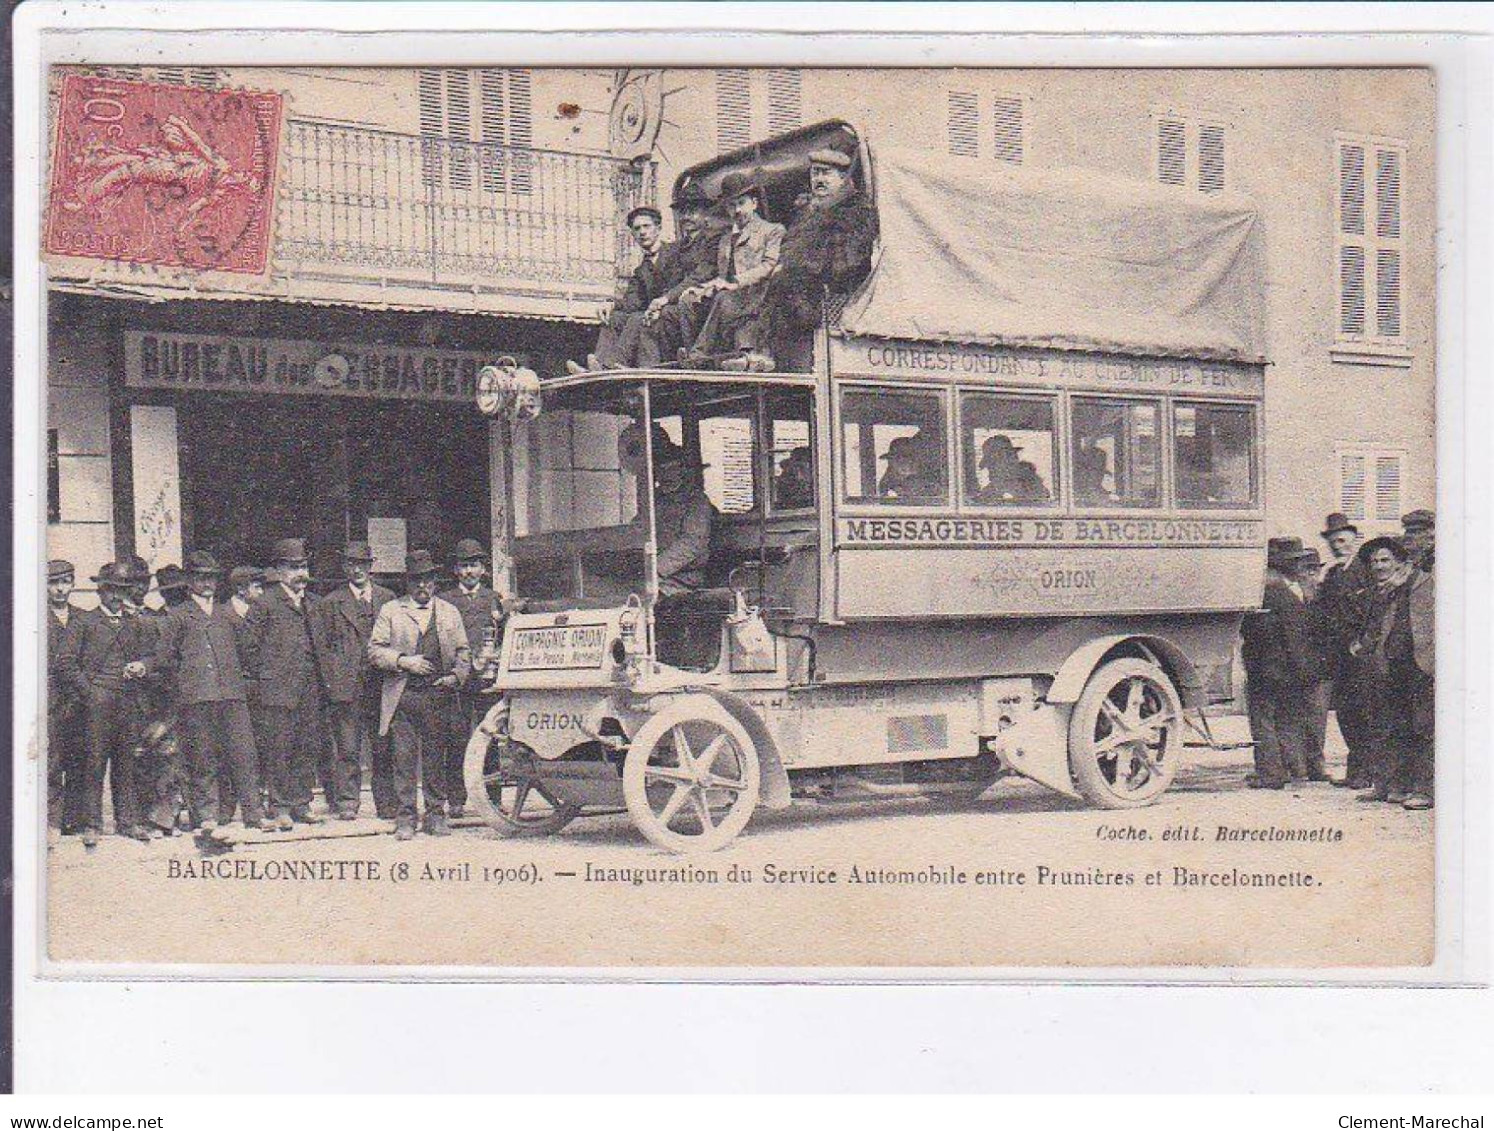 BARCELONNETTE: Inauguration Du Service Automobile Entre Prunières Et Barcelonnette - état - Barcelonnetta